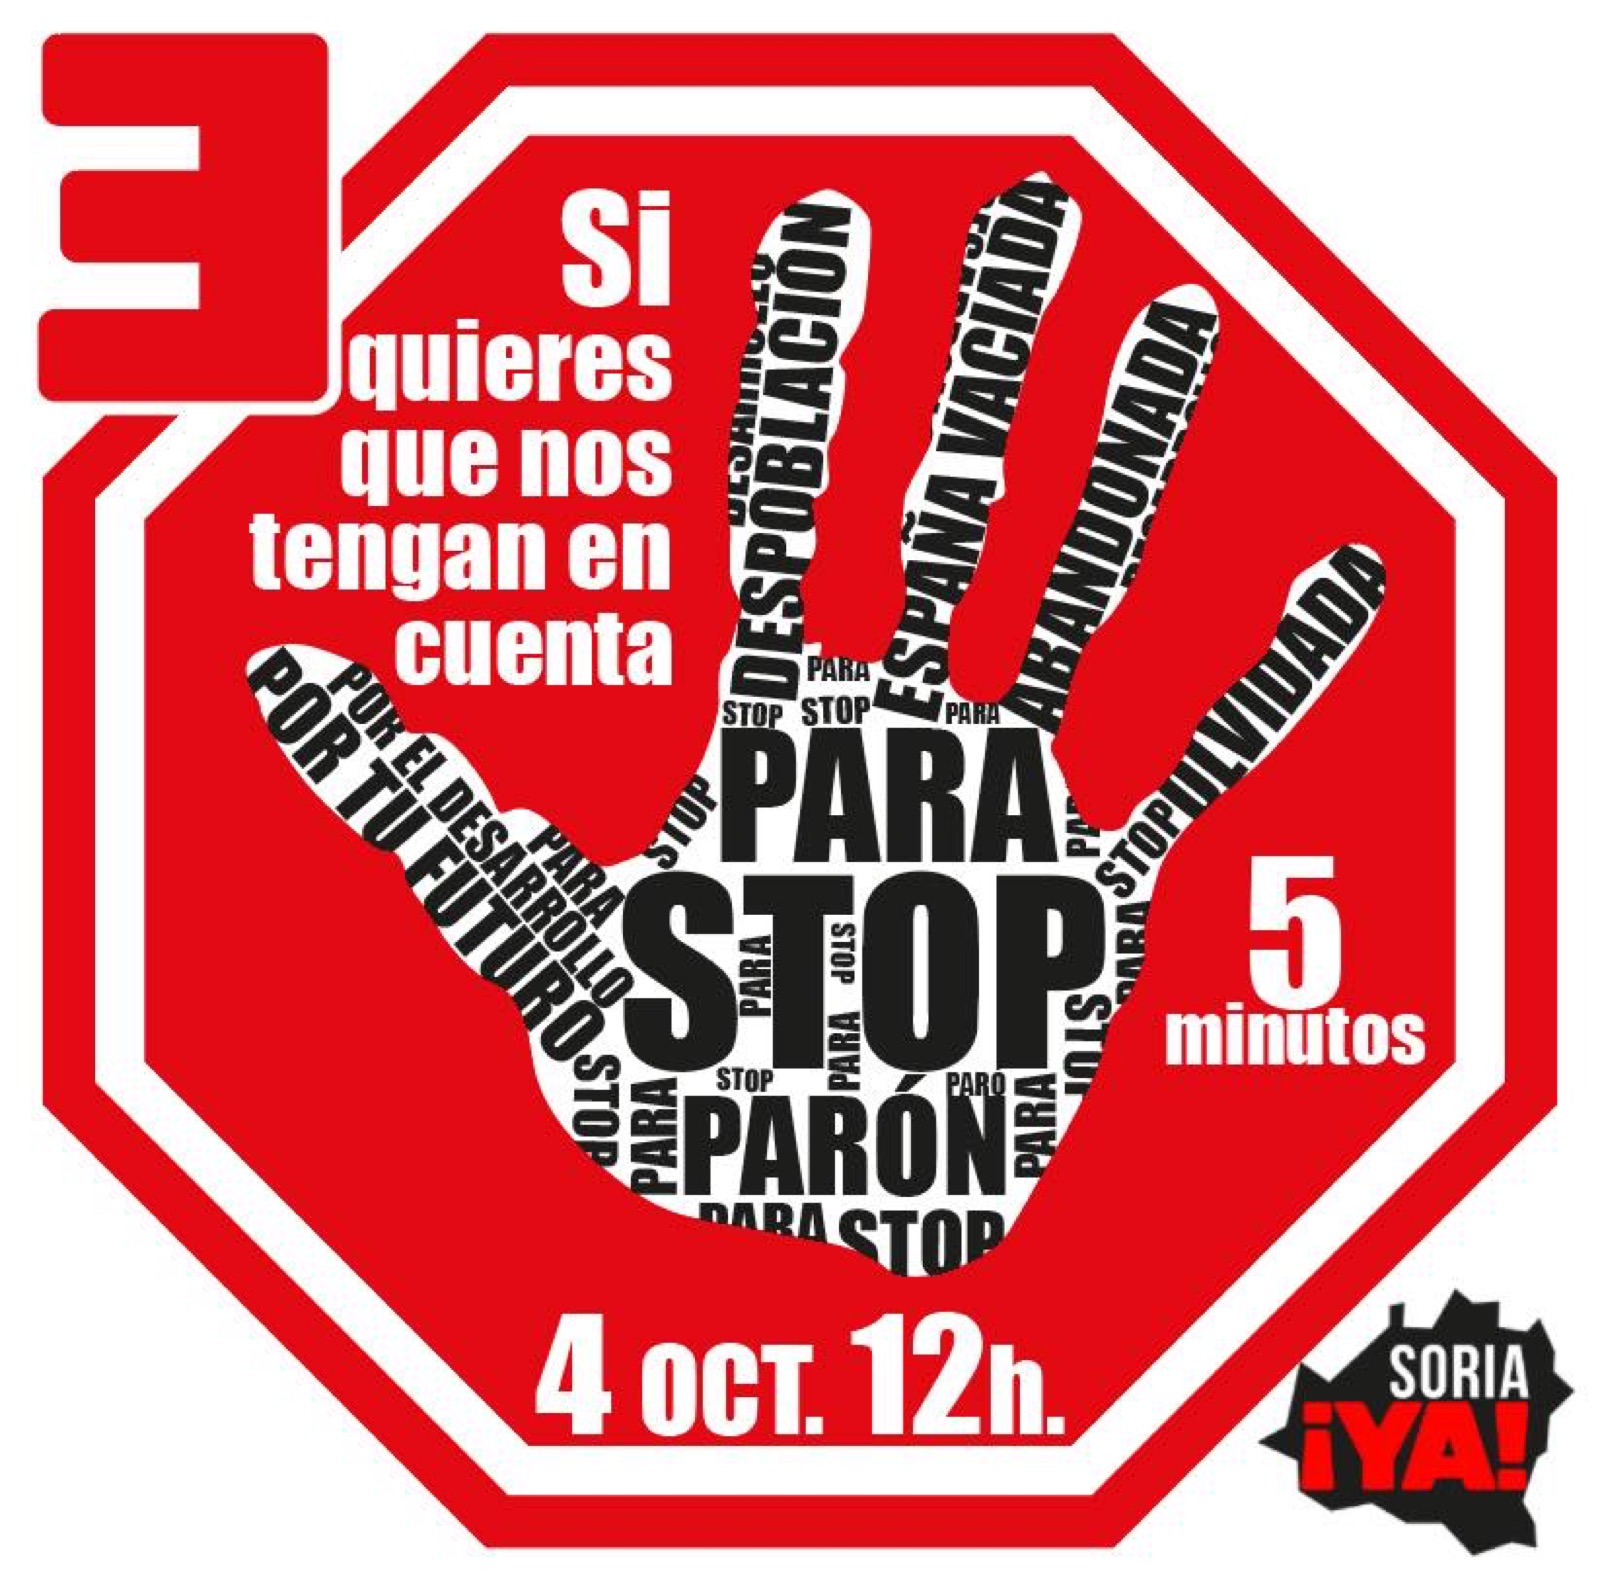 La Cámara de Comercio de Soria anima a las empresas a secundar el paro convocado por Soria ¡Ya! para este 4 de octubre